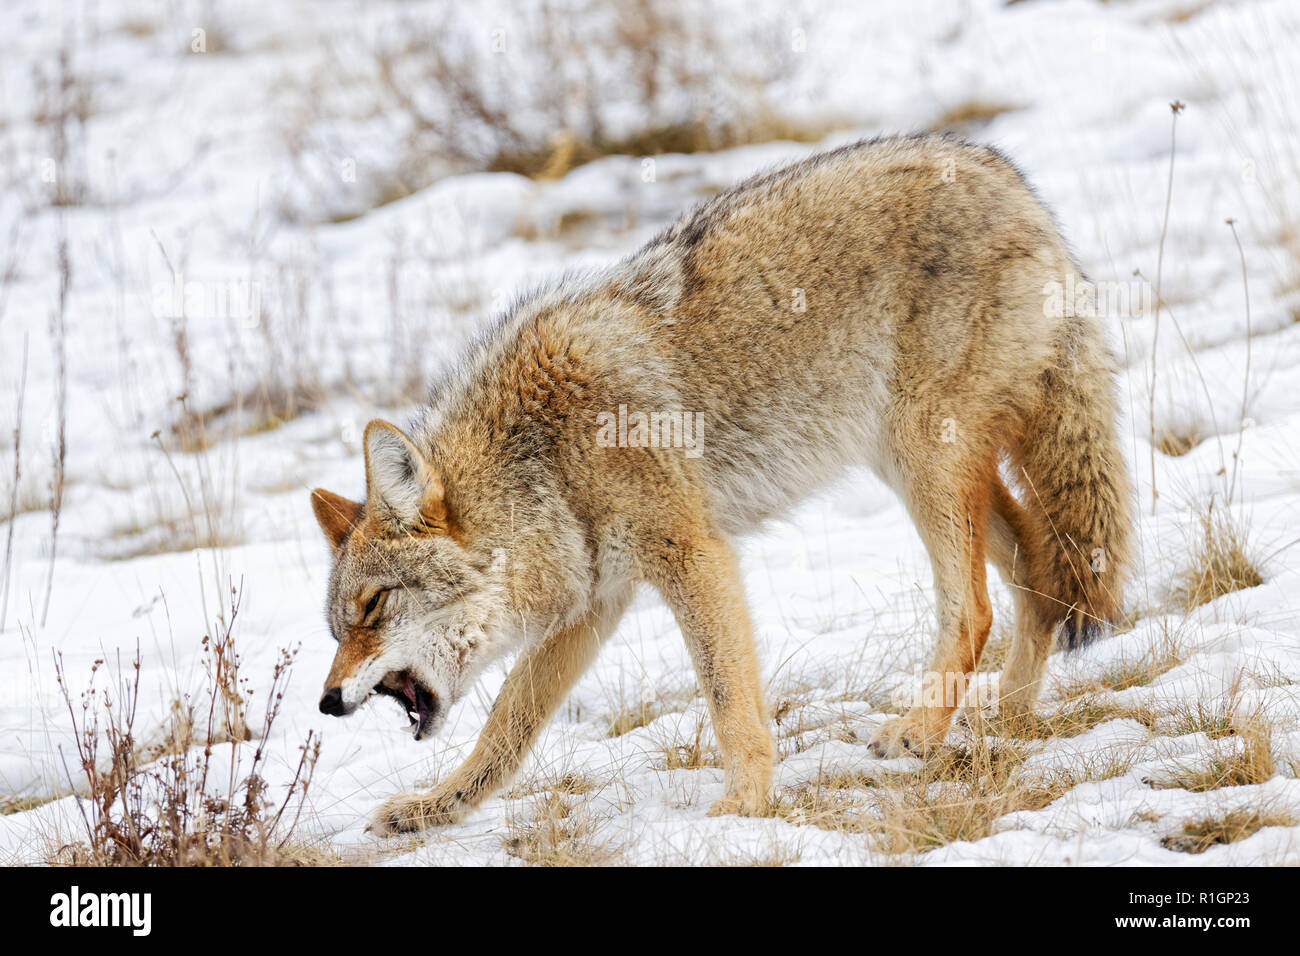 42,757.09725 close up Coyote ständigen Kopf Husten ersticken Essen im Mund und Rachen verfangen, kalte Winter Schnee Schnee grasigen Hang zu lösen Stockfoto